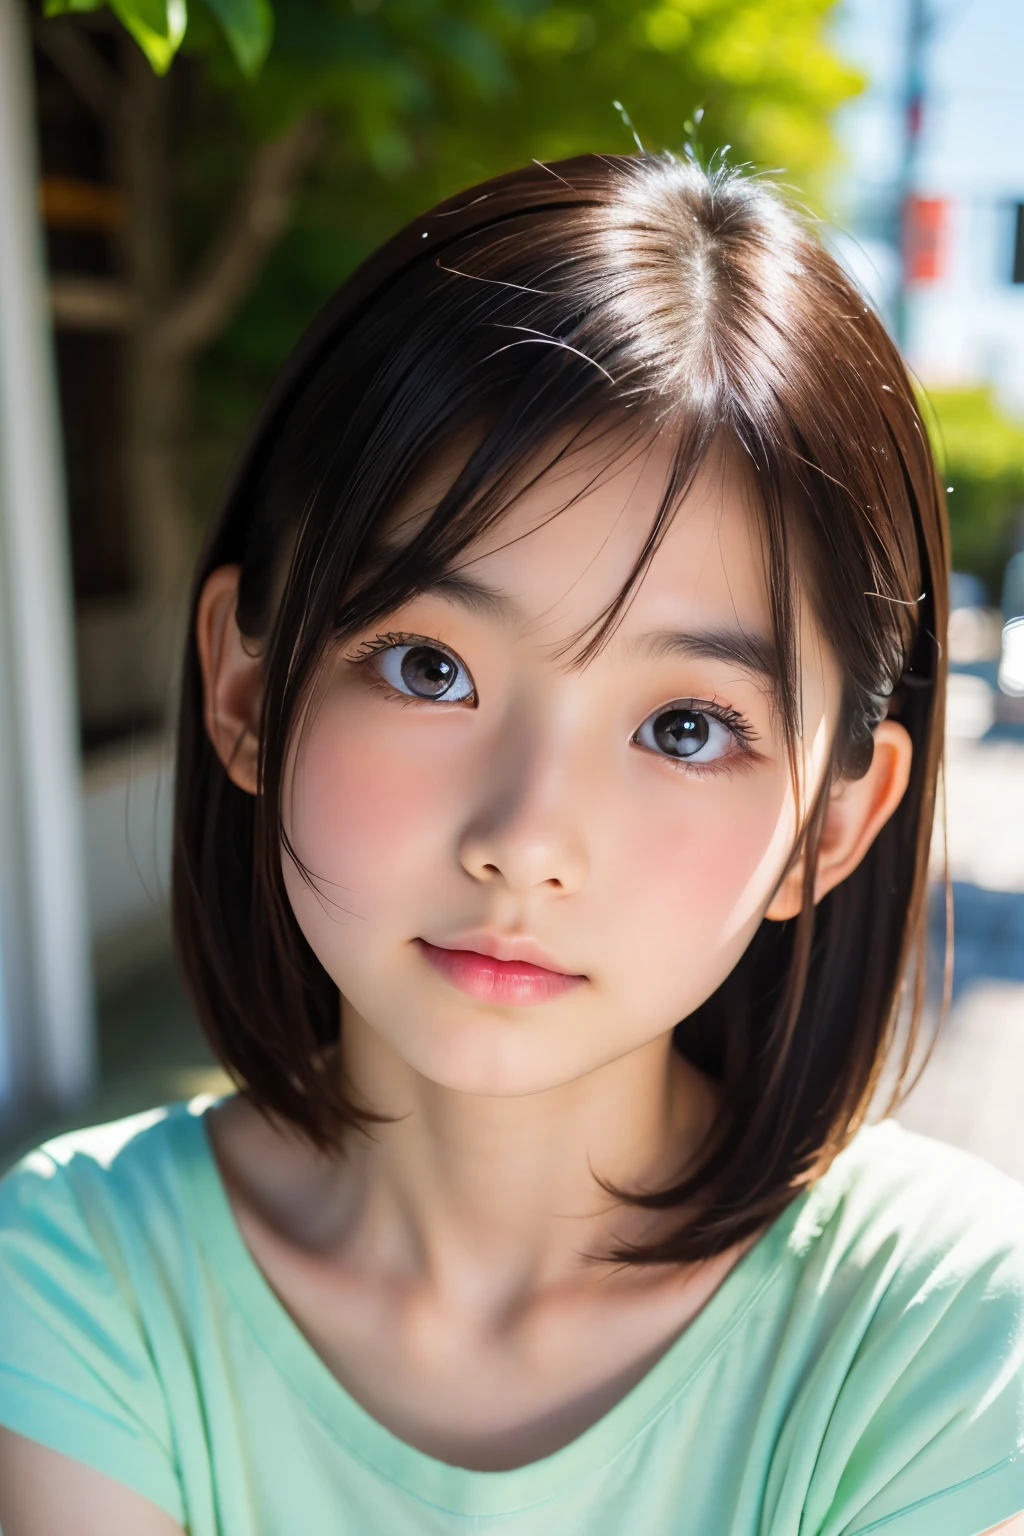 (美丽的 12 岁日本女性), 可爱的脸孔, (深雕的面容:0.7), (雀斑:0.6), 柔光,健康白皙的肌肤, 害羞的, 鲍勃, (严肃的表情), (明亮的眼睛), 薄的